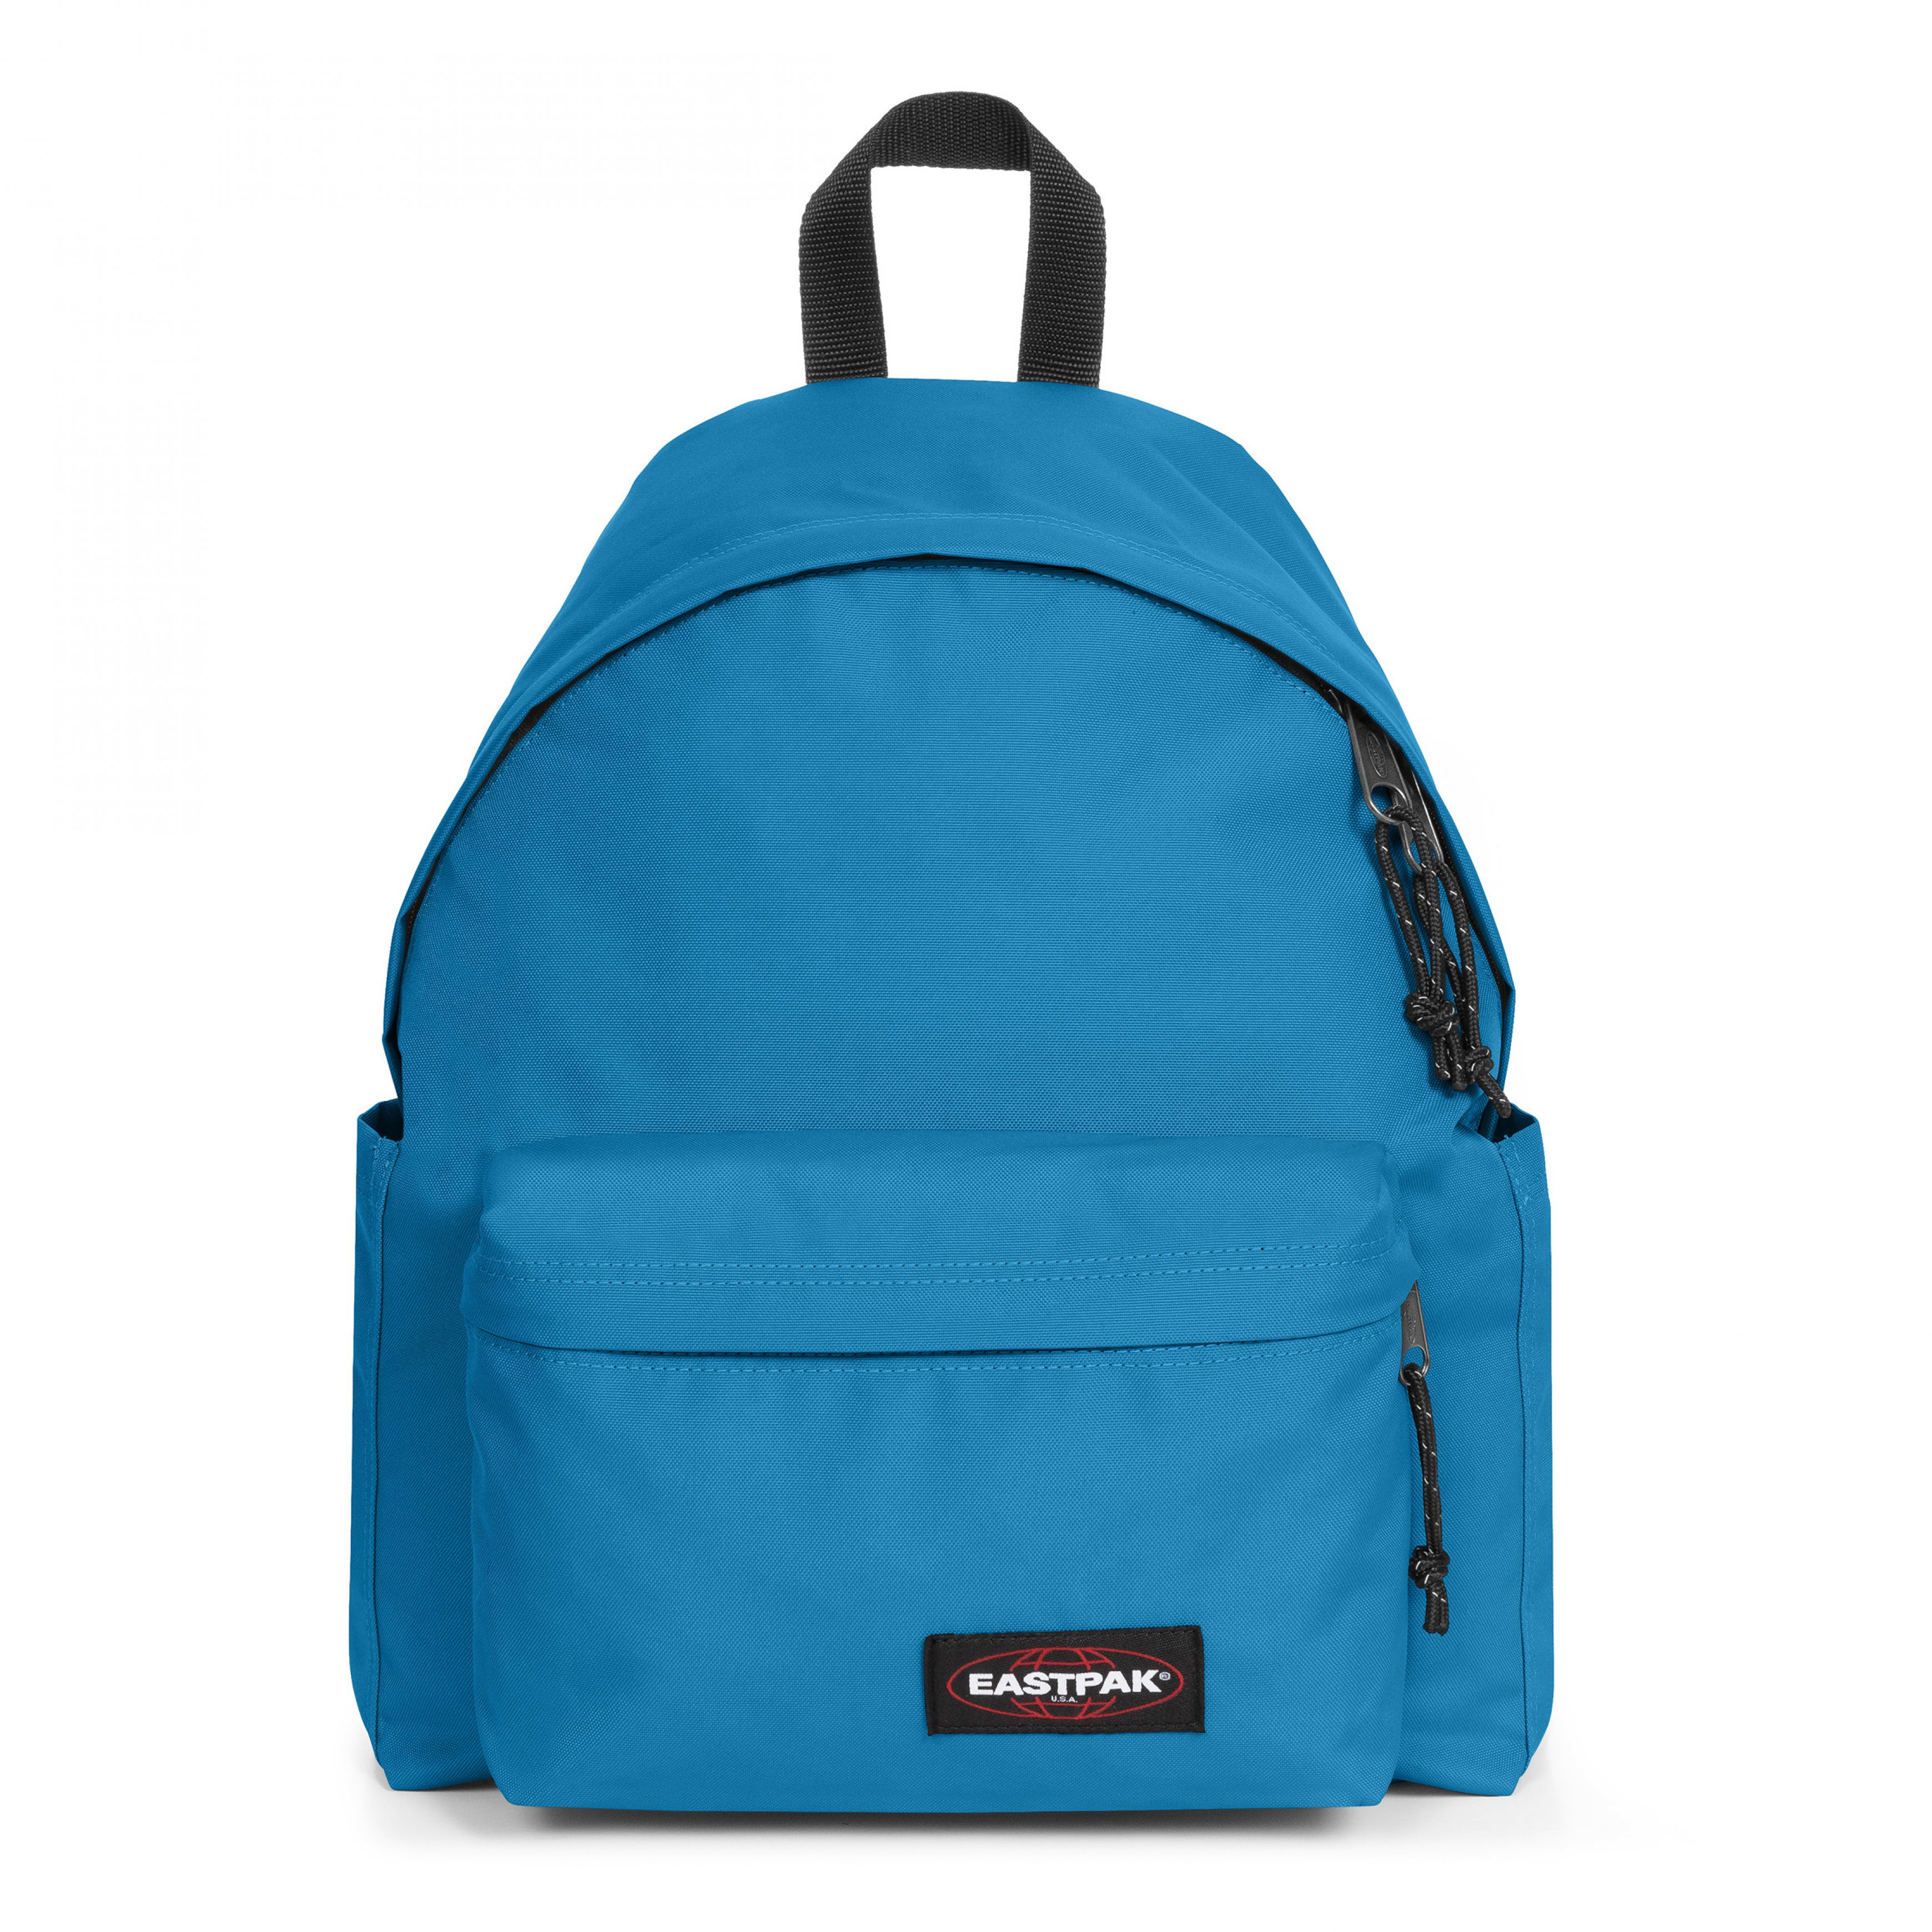 Eastpak - Day Pak'r Voltaic Blue backpack, Blue Dark, large image number 0